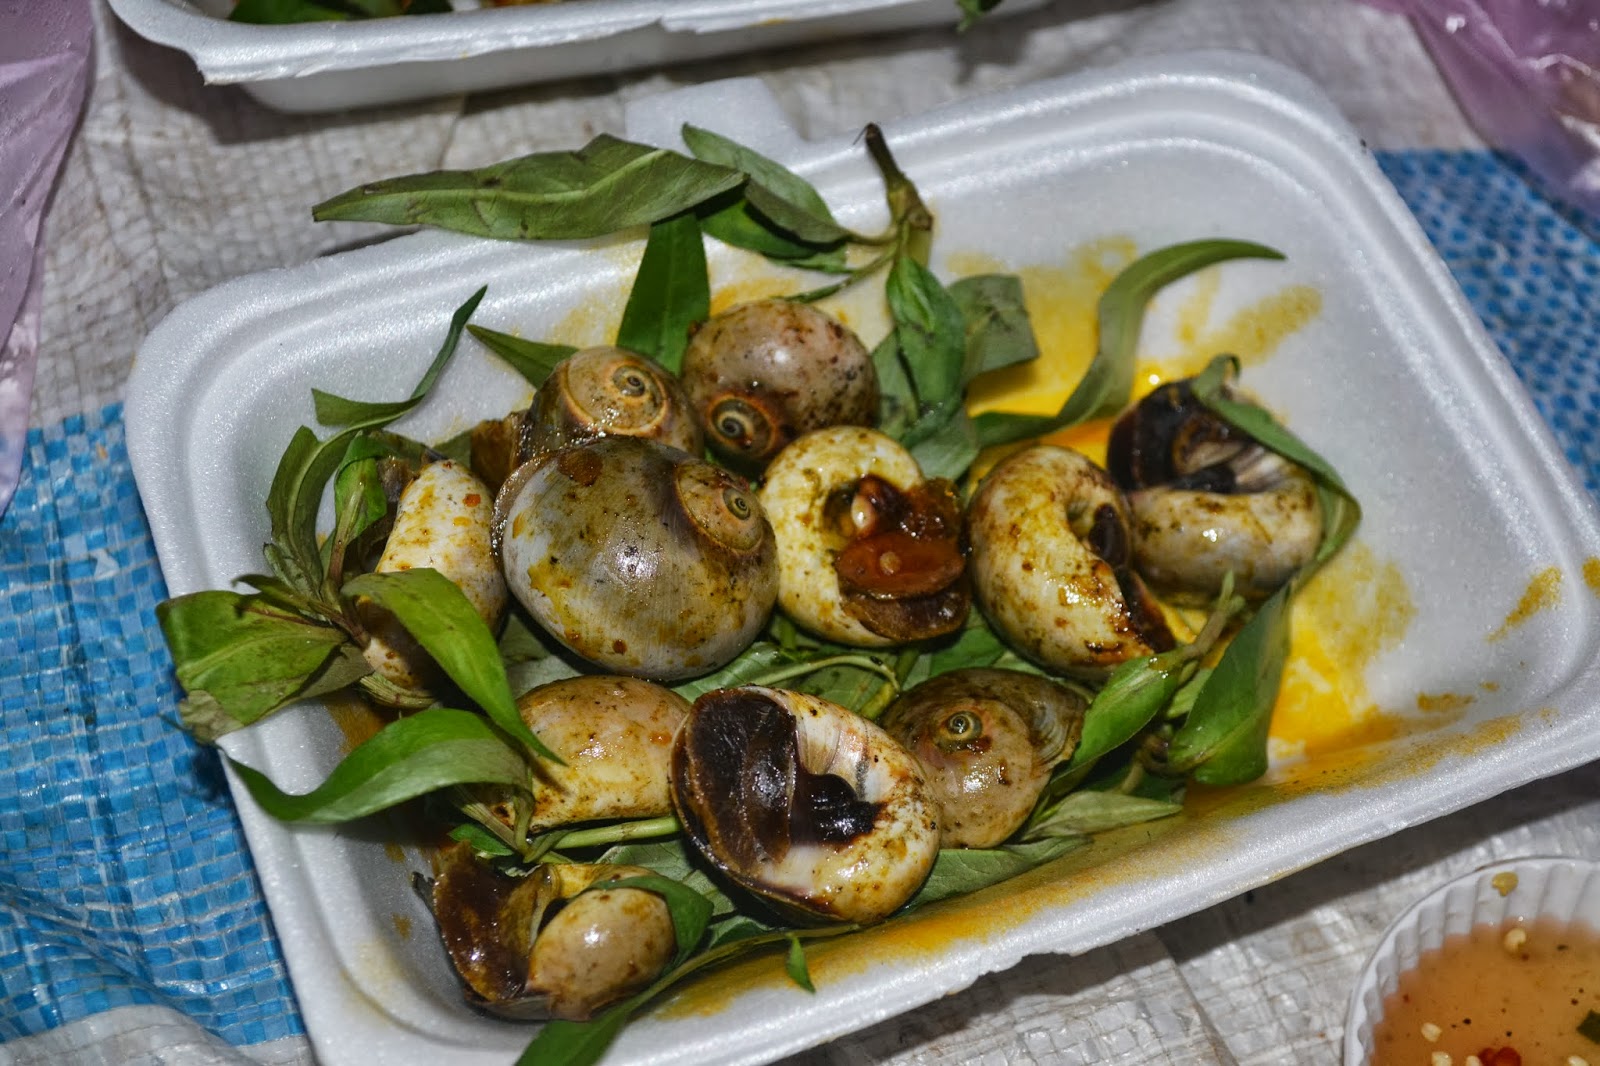 eating periwinkle snail in vung tau, vietnam